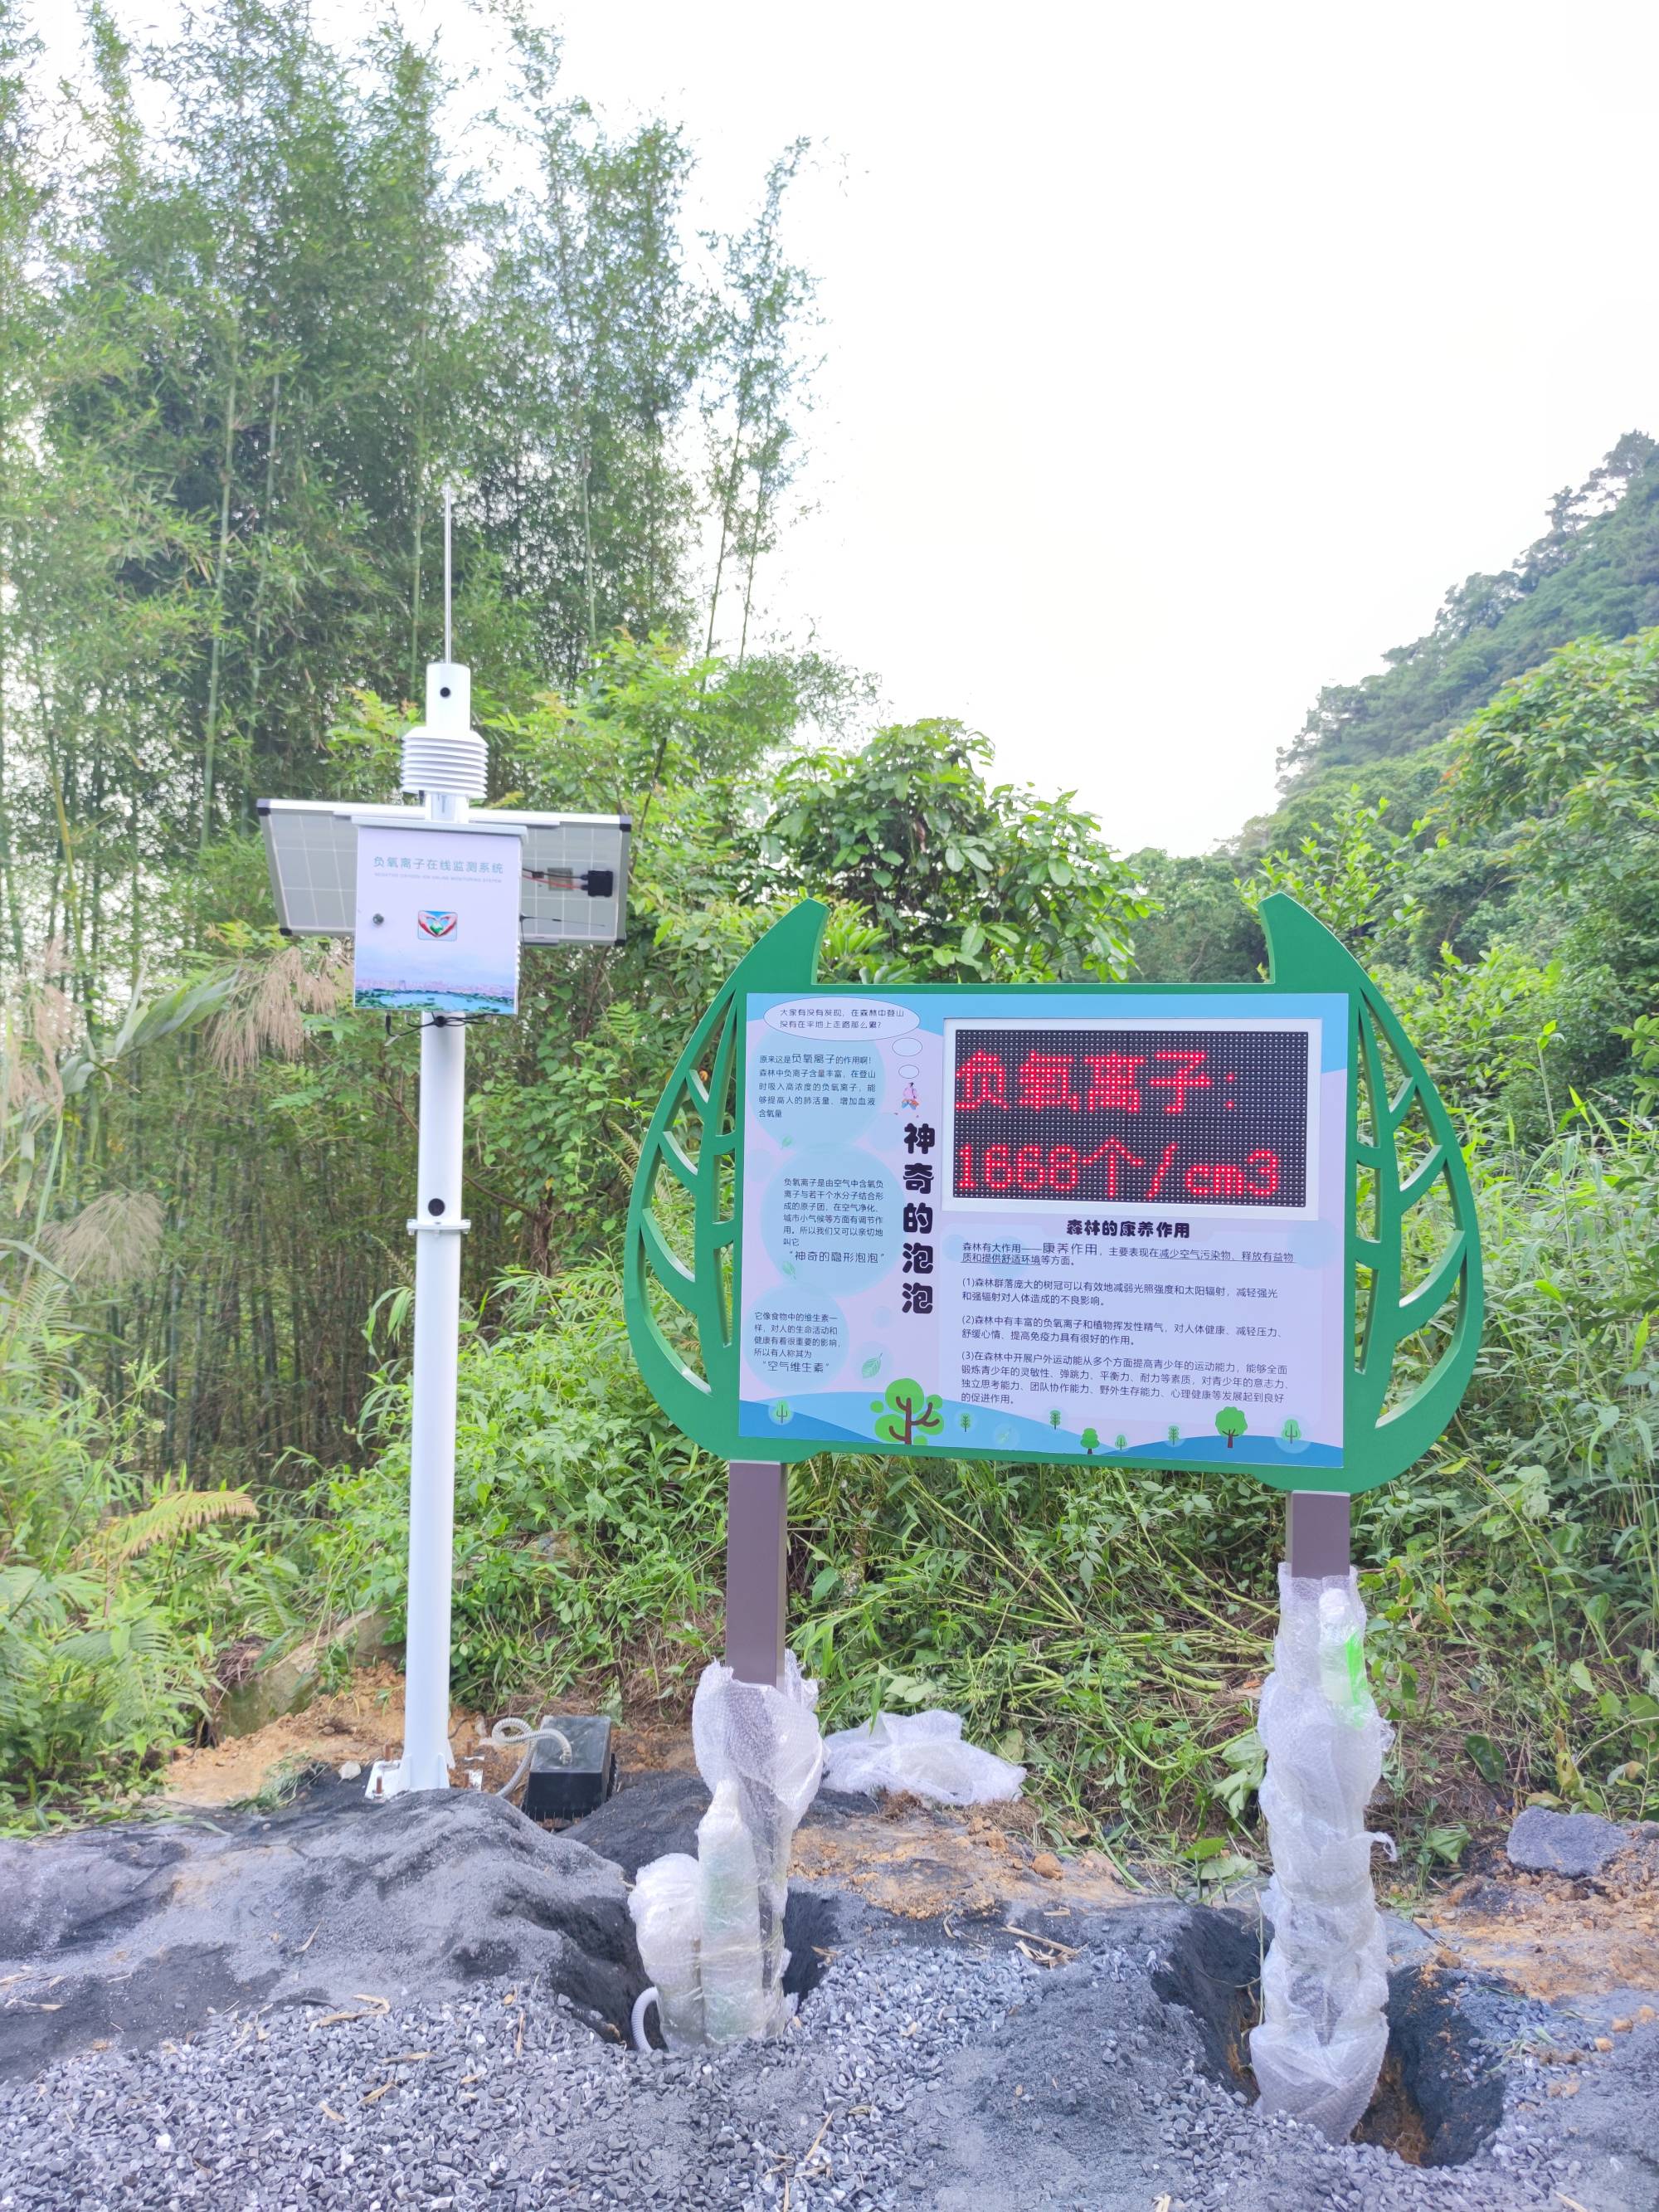 广东自然保护区空气负氧离子浓度监测仪 OSEN-FY风景区负氧离子含量监测设备